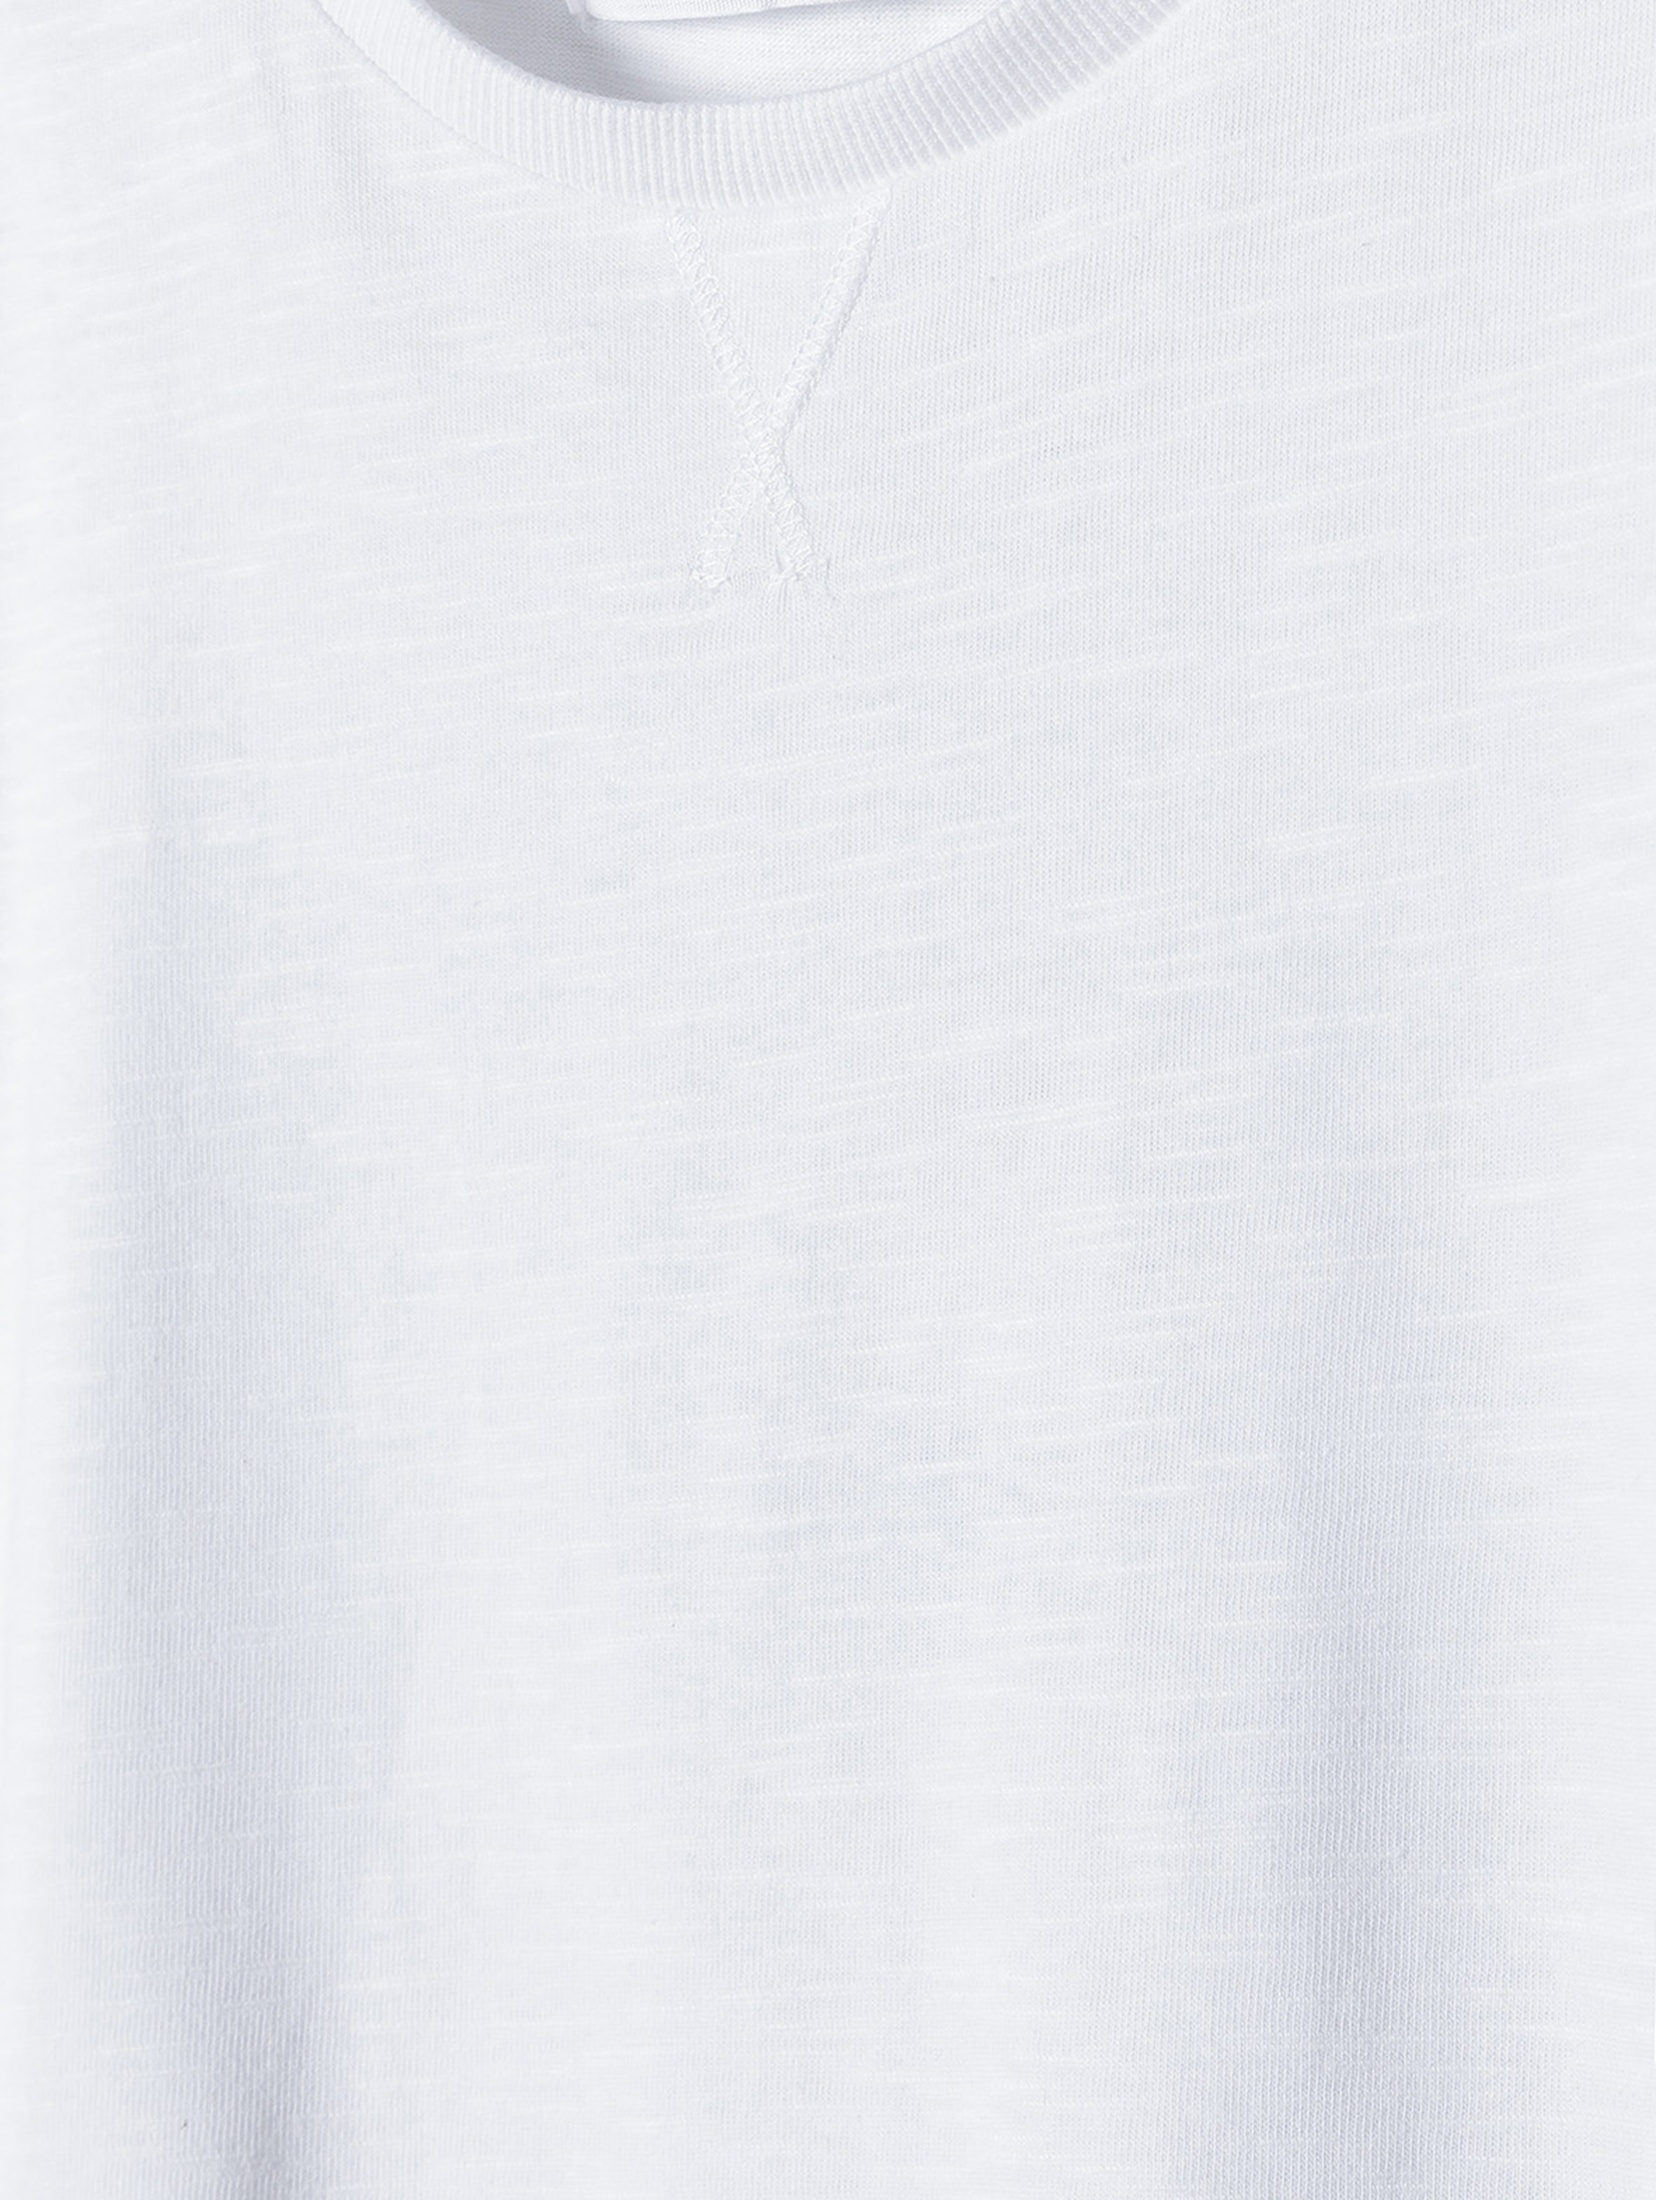 Biały t-shirt bawełniany basic dla niemowlaka